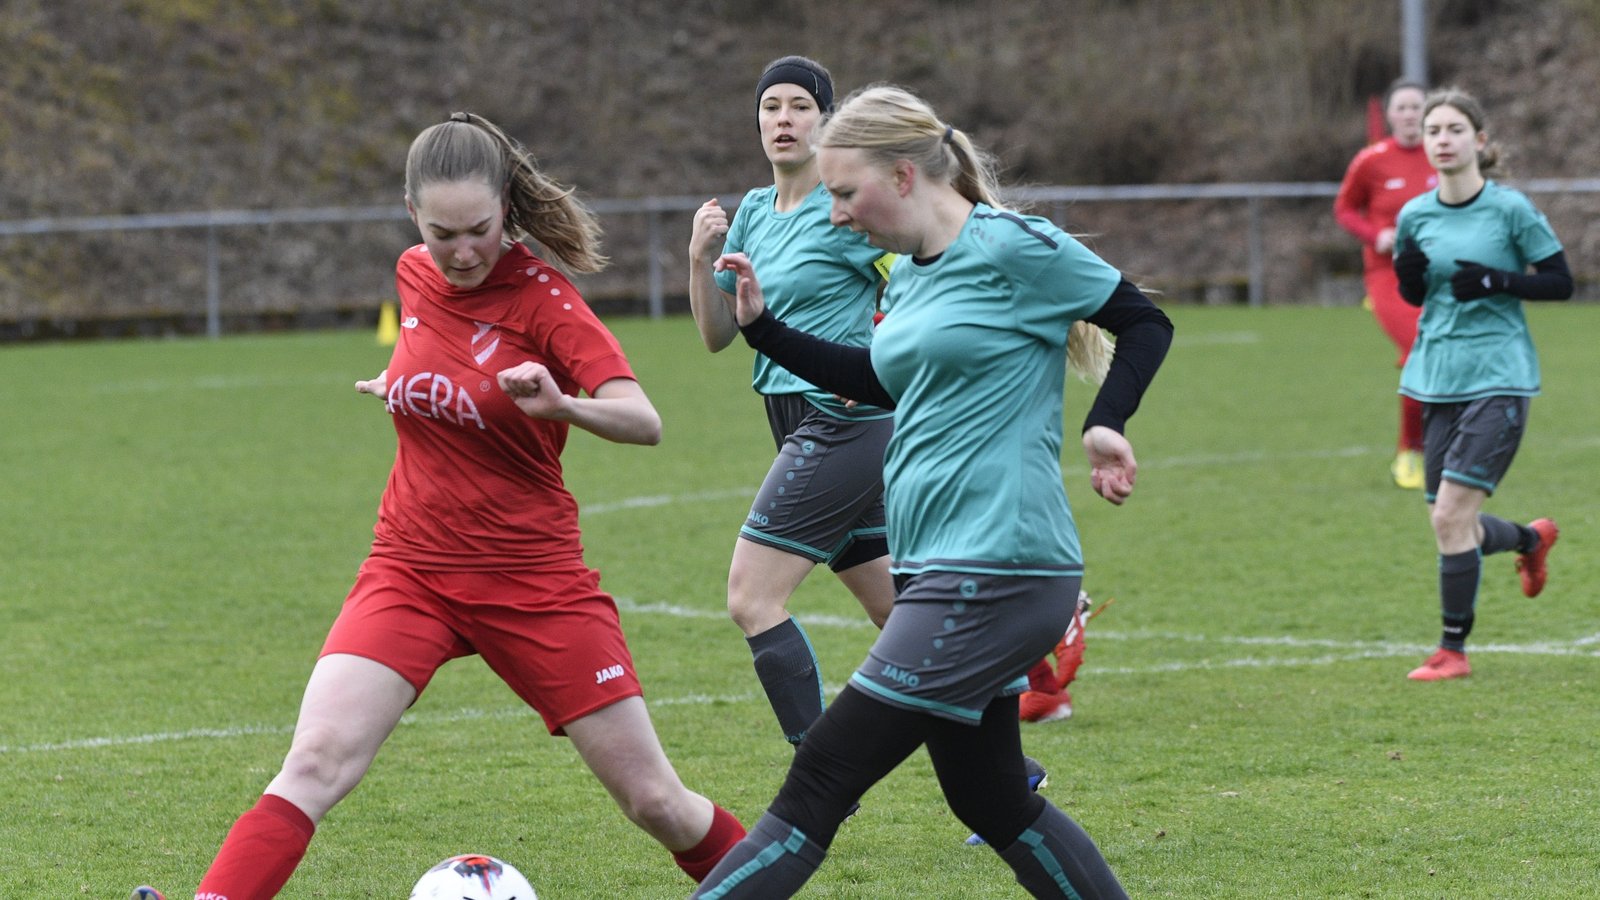 Derby in Horrheim: Nathalie Renz von den Gastgebern (links) und SGM-Spielerin Sofia Freisler kämpfen um den Ball. Foto: Leitner